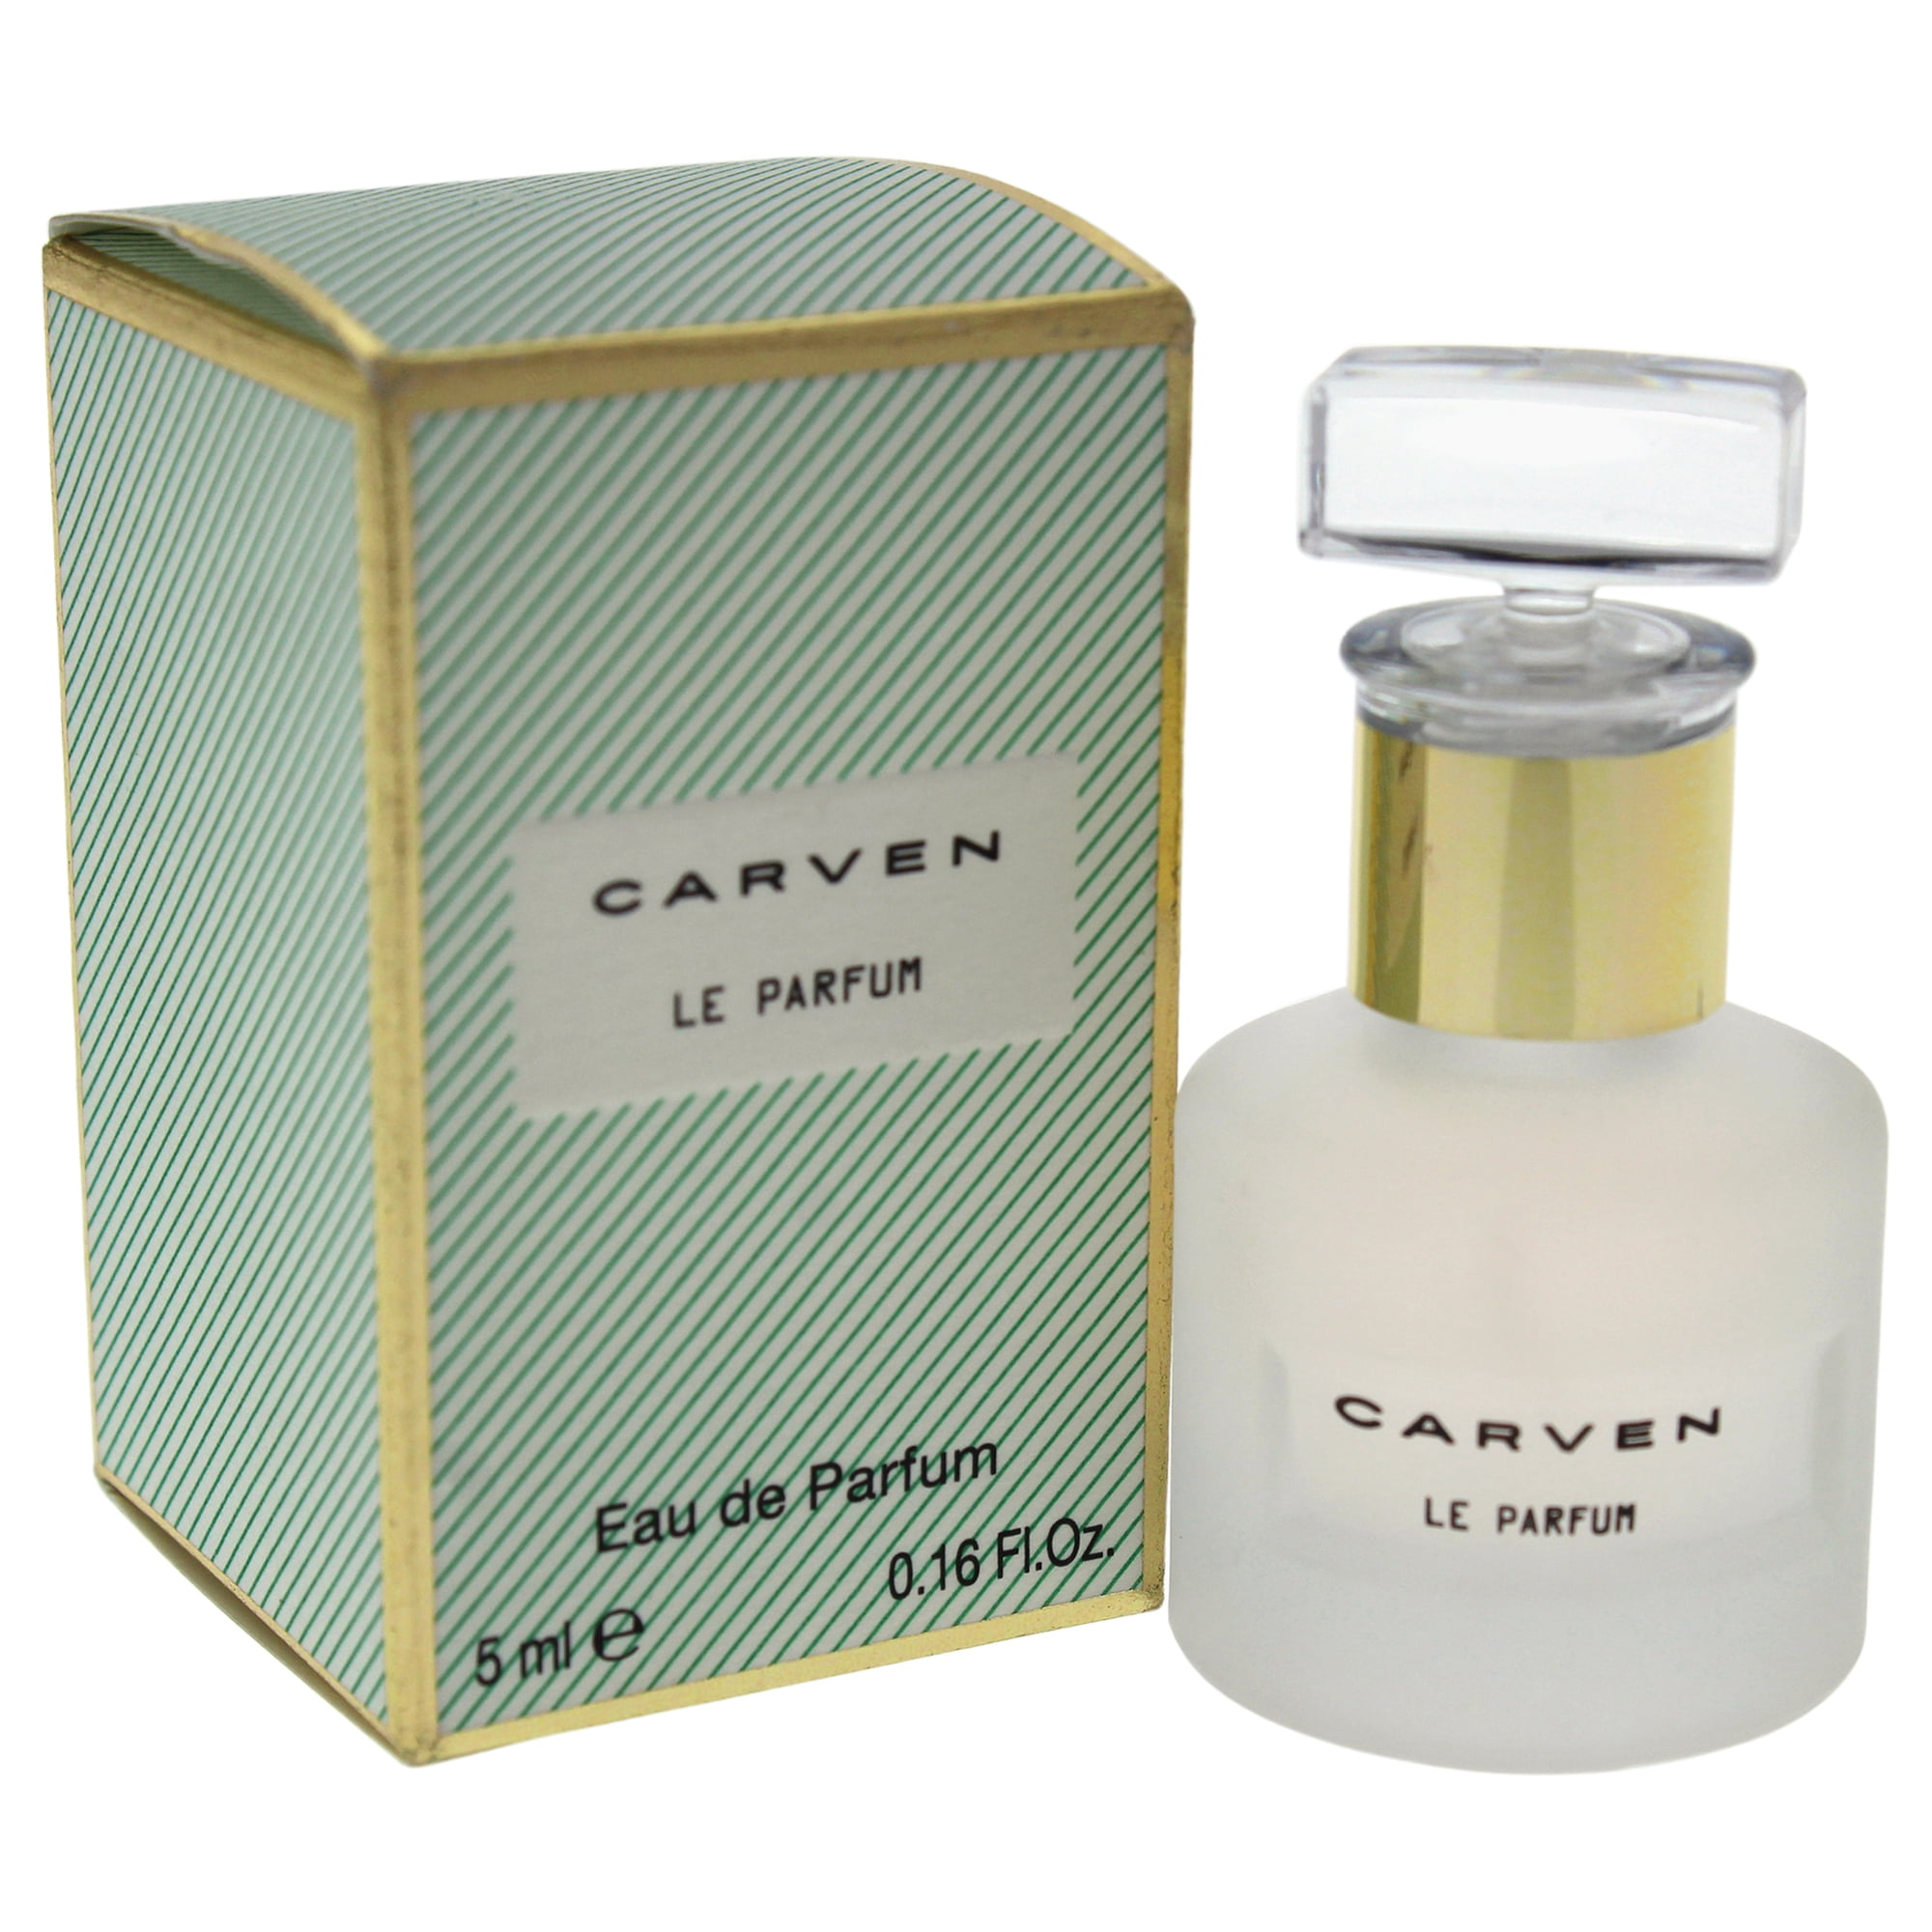 Carven - Le Parfum by Carven for Women - 0.16 oz EDP Splash (Mini ...